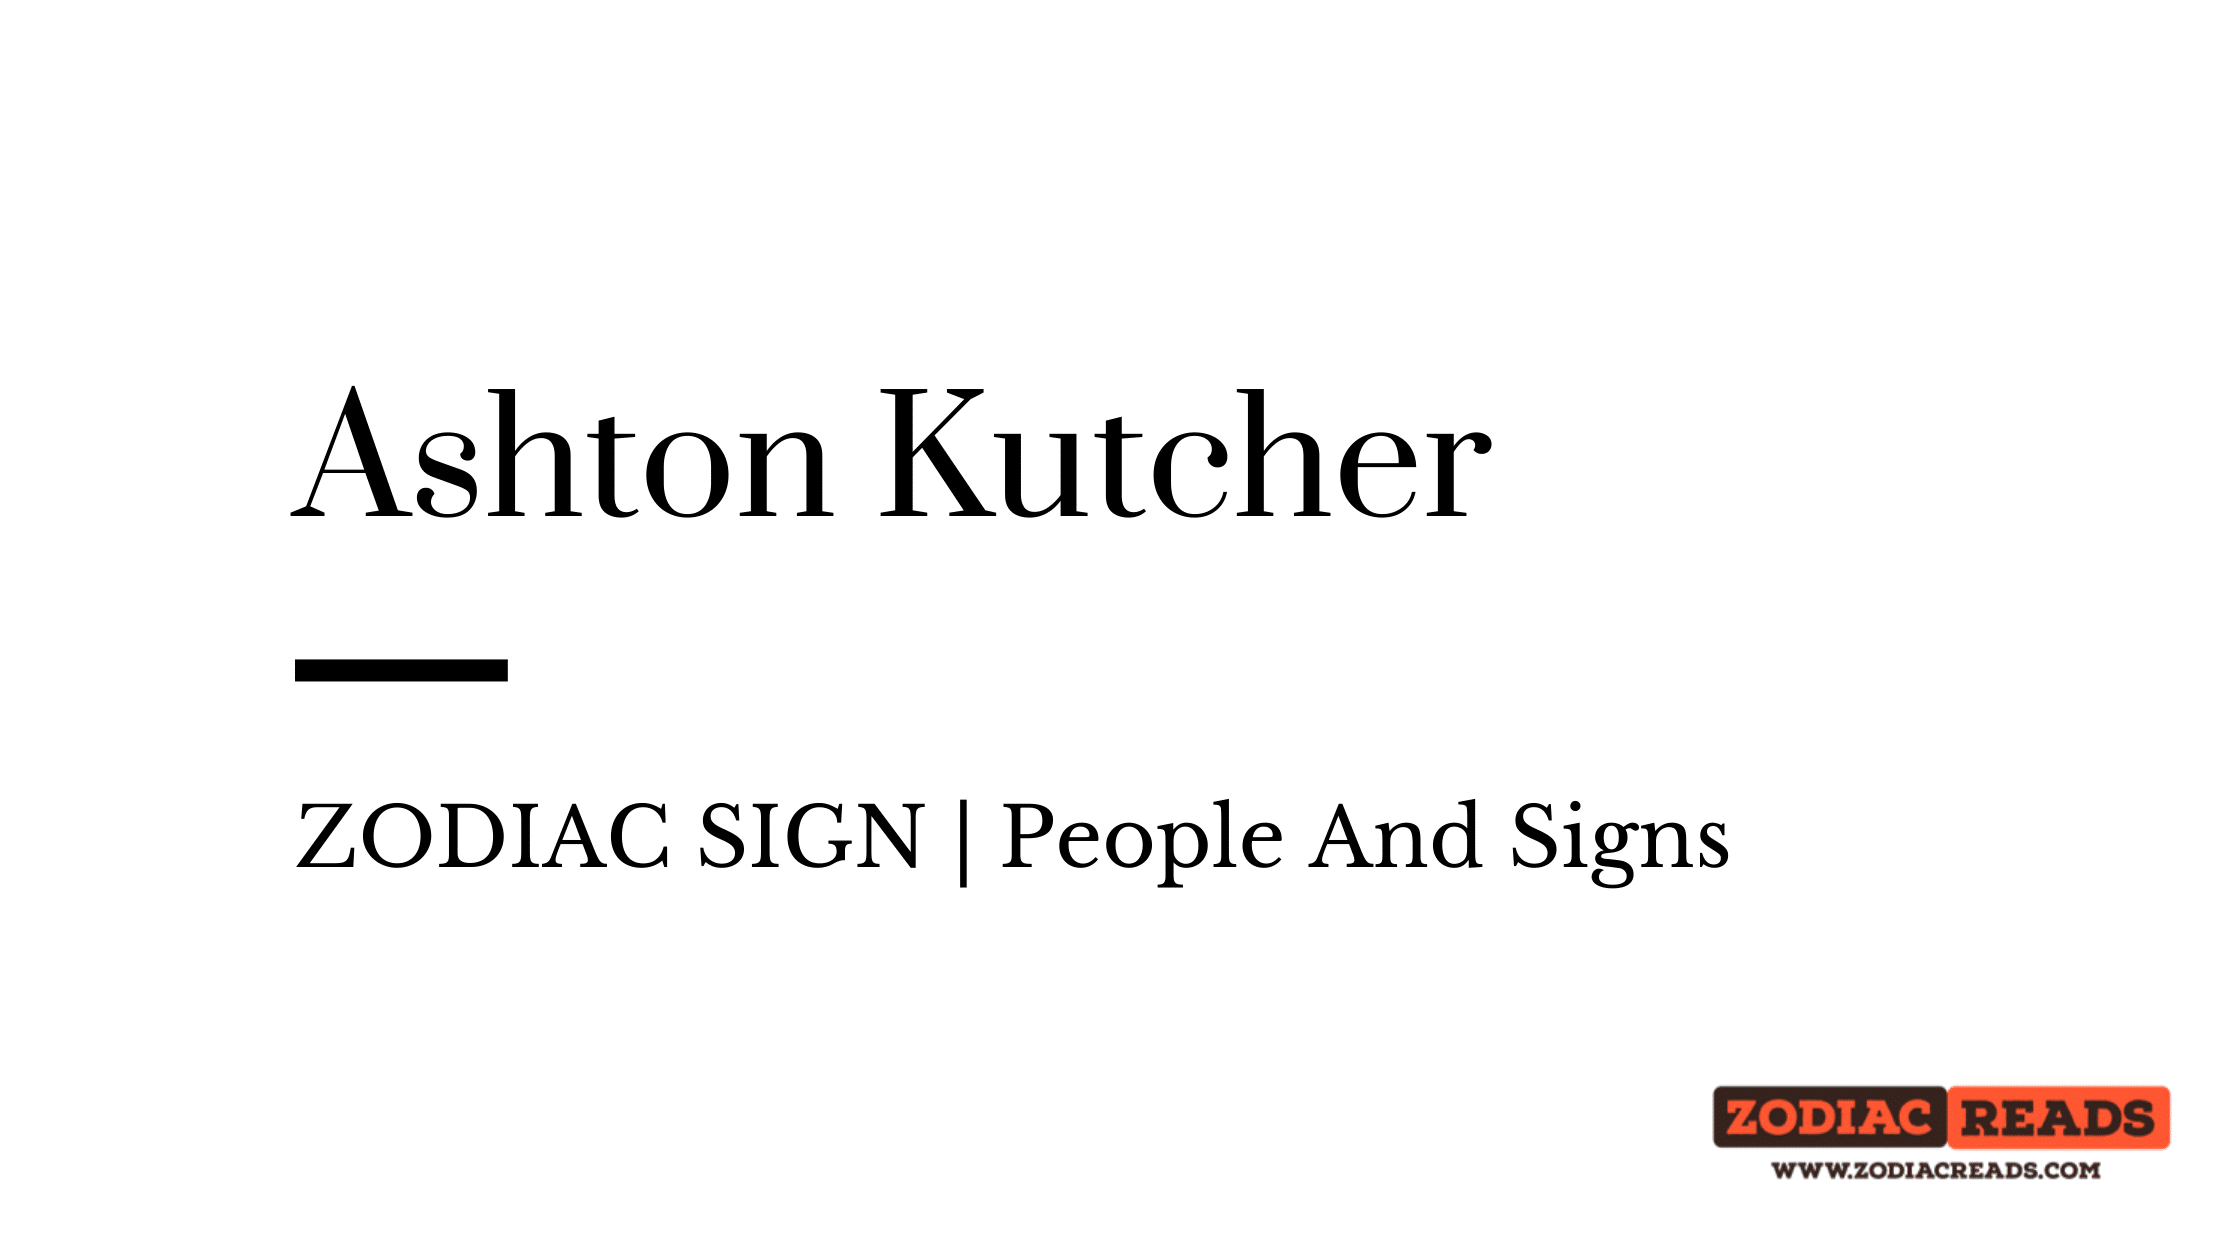 Ashton Kutcher zodiac